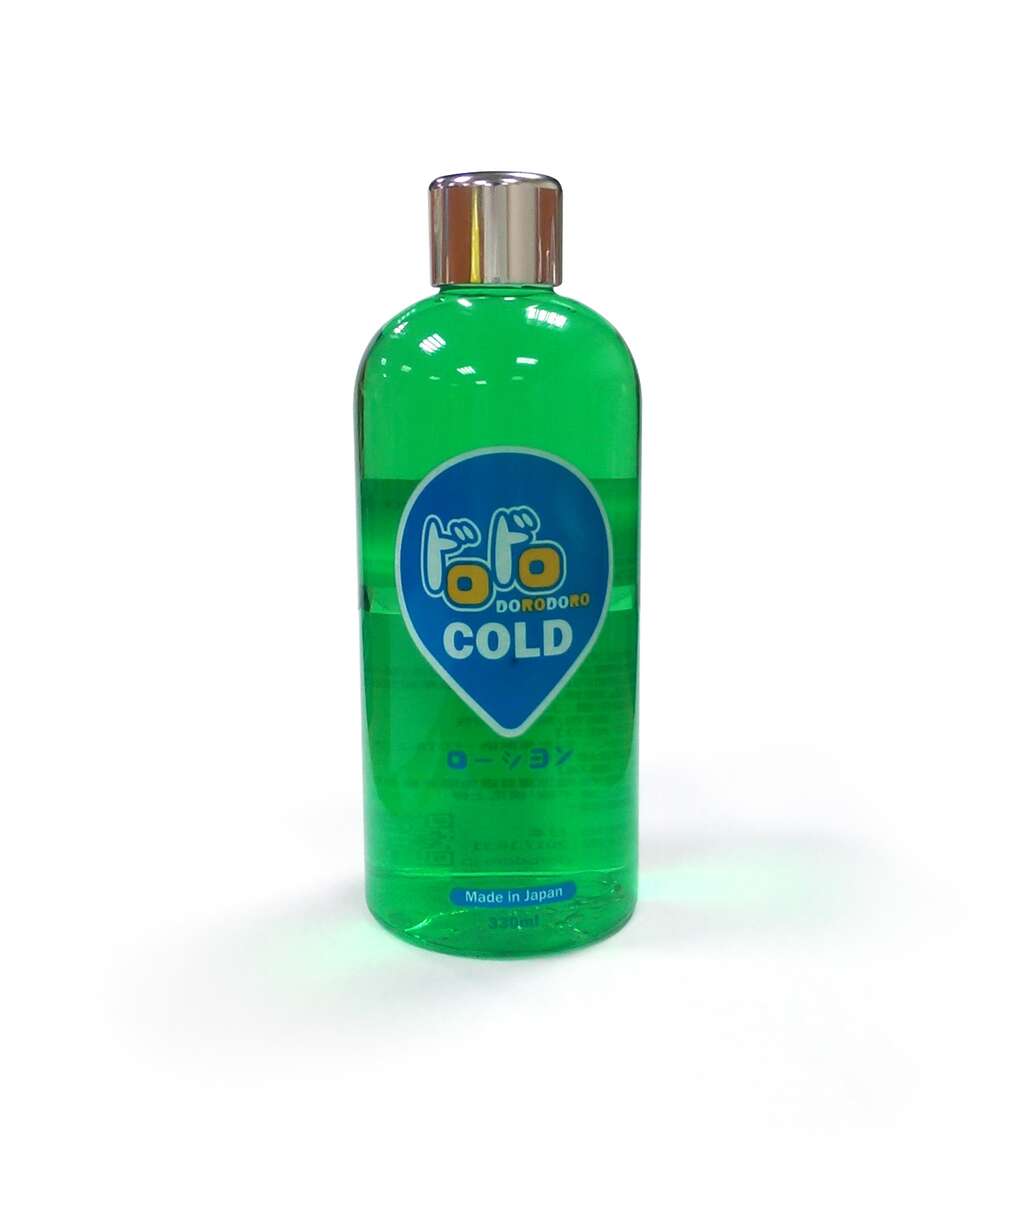 ドロドロ COLD 330ml DORODORO 涼感 潤滑液